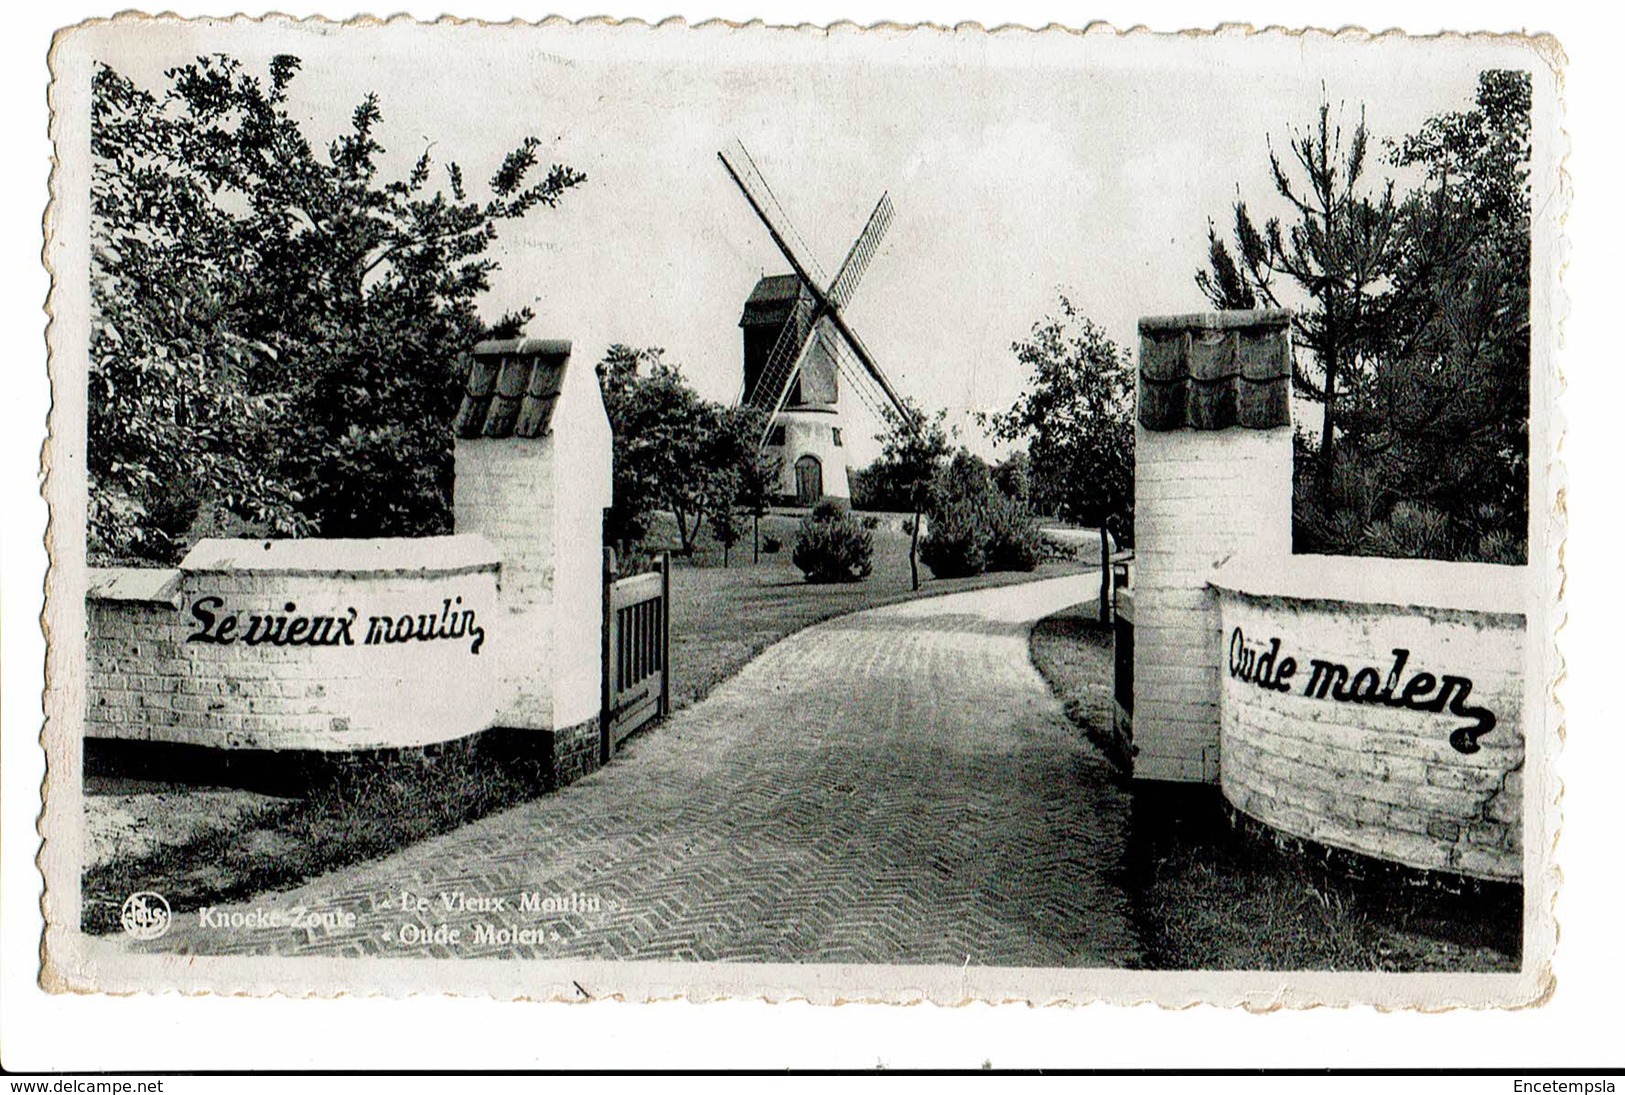 CPA - Cartes Postales-Belgique - Knokke--Le Vieux Moulin -1955-S4067 - Knokke